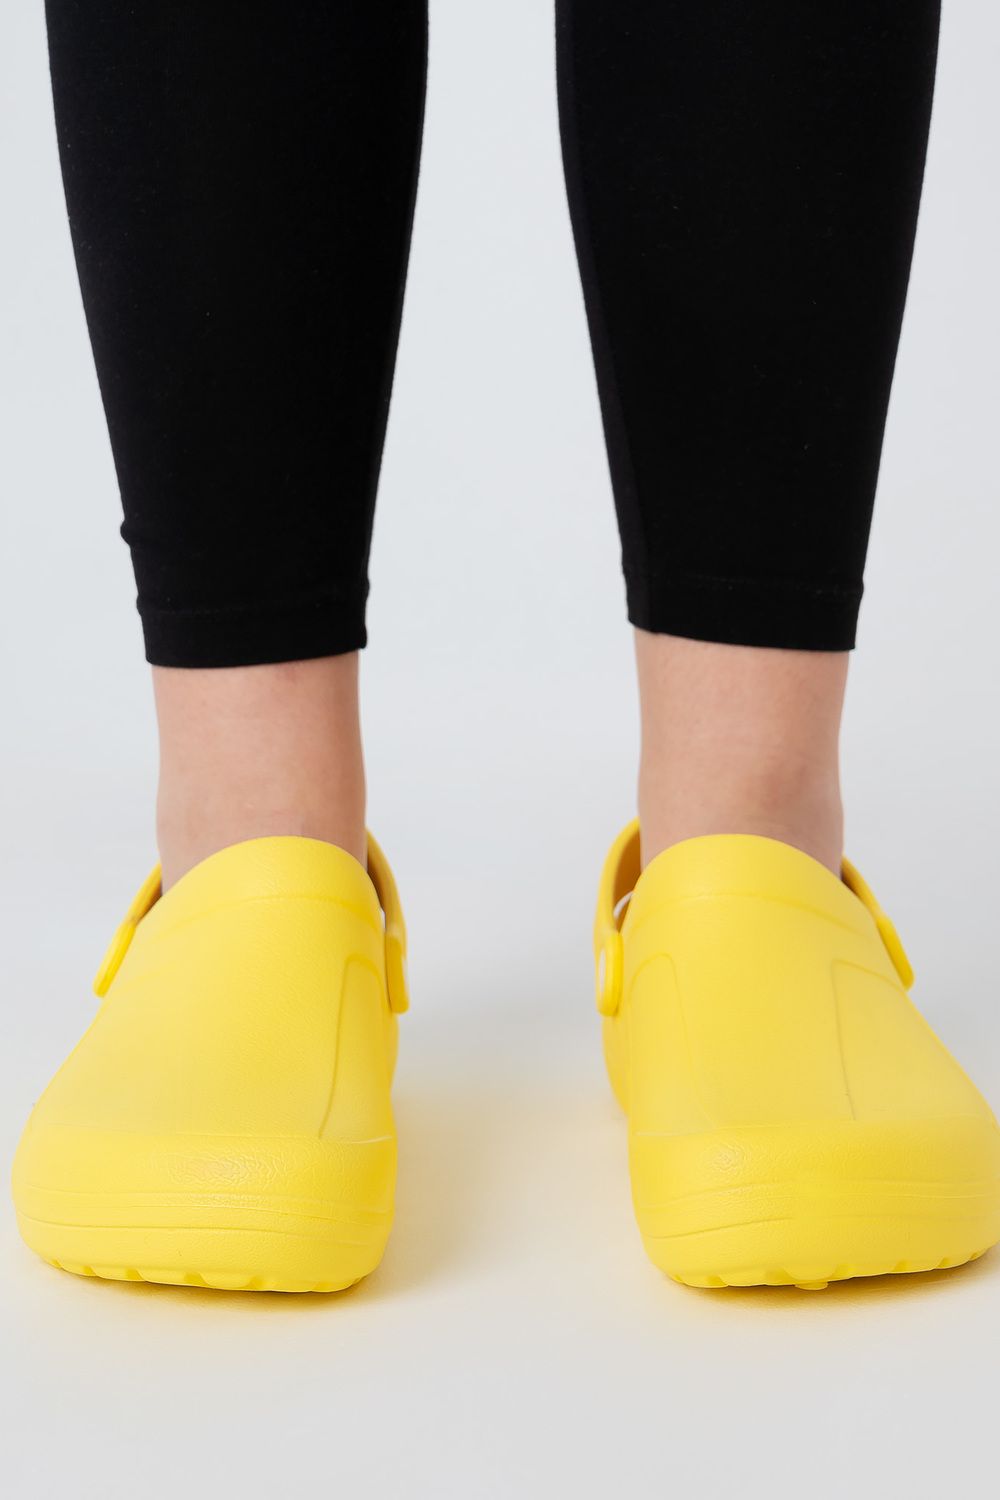 Обувь повседневная женская сабо FGR - желтый